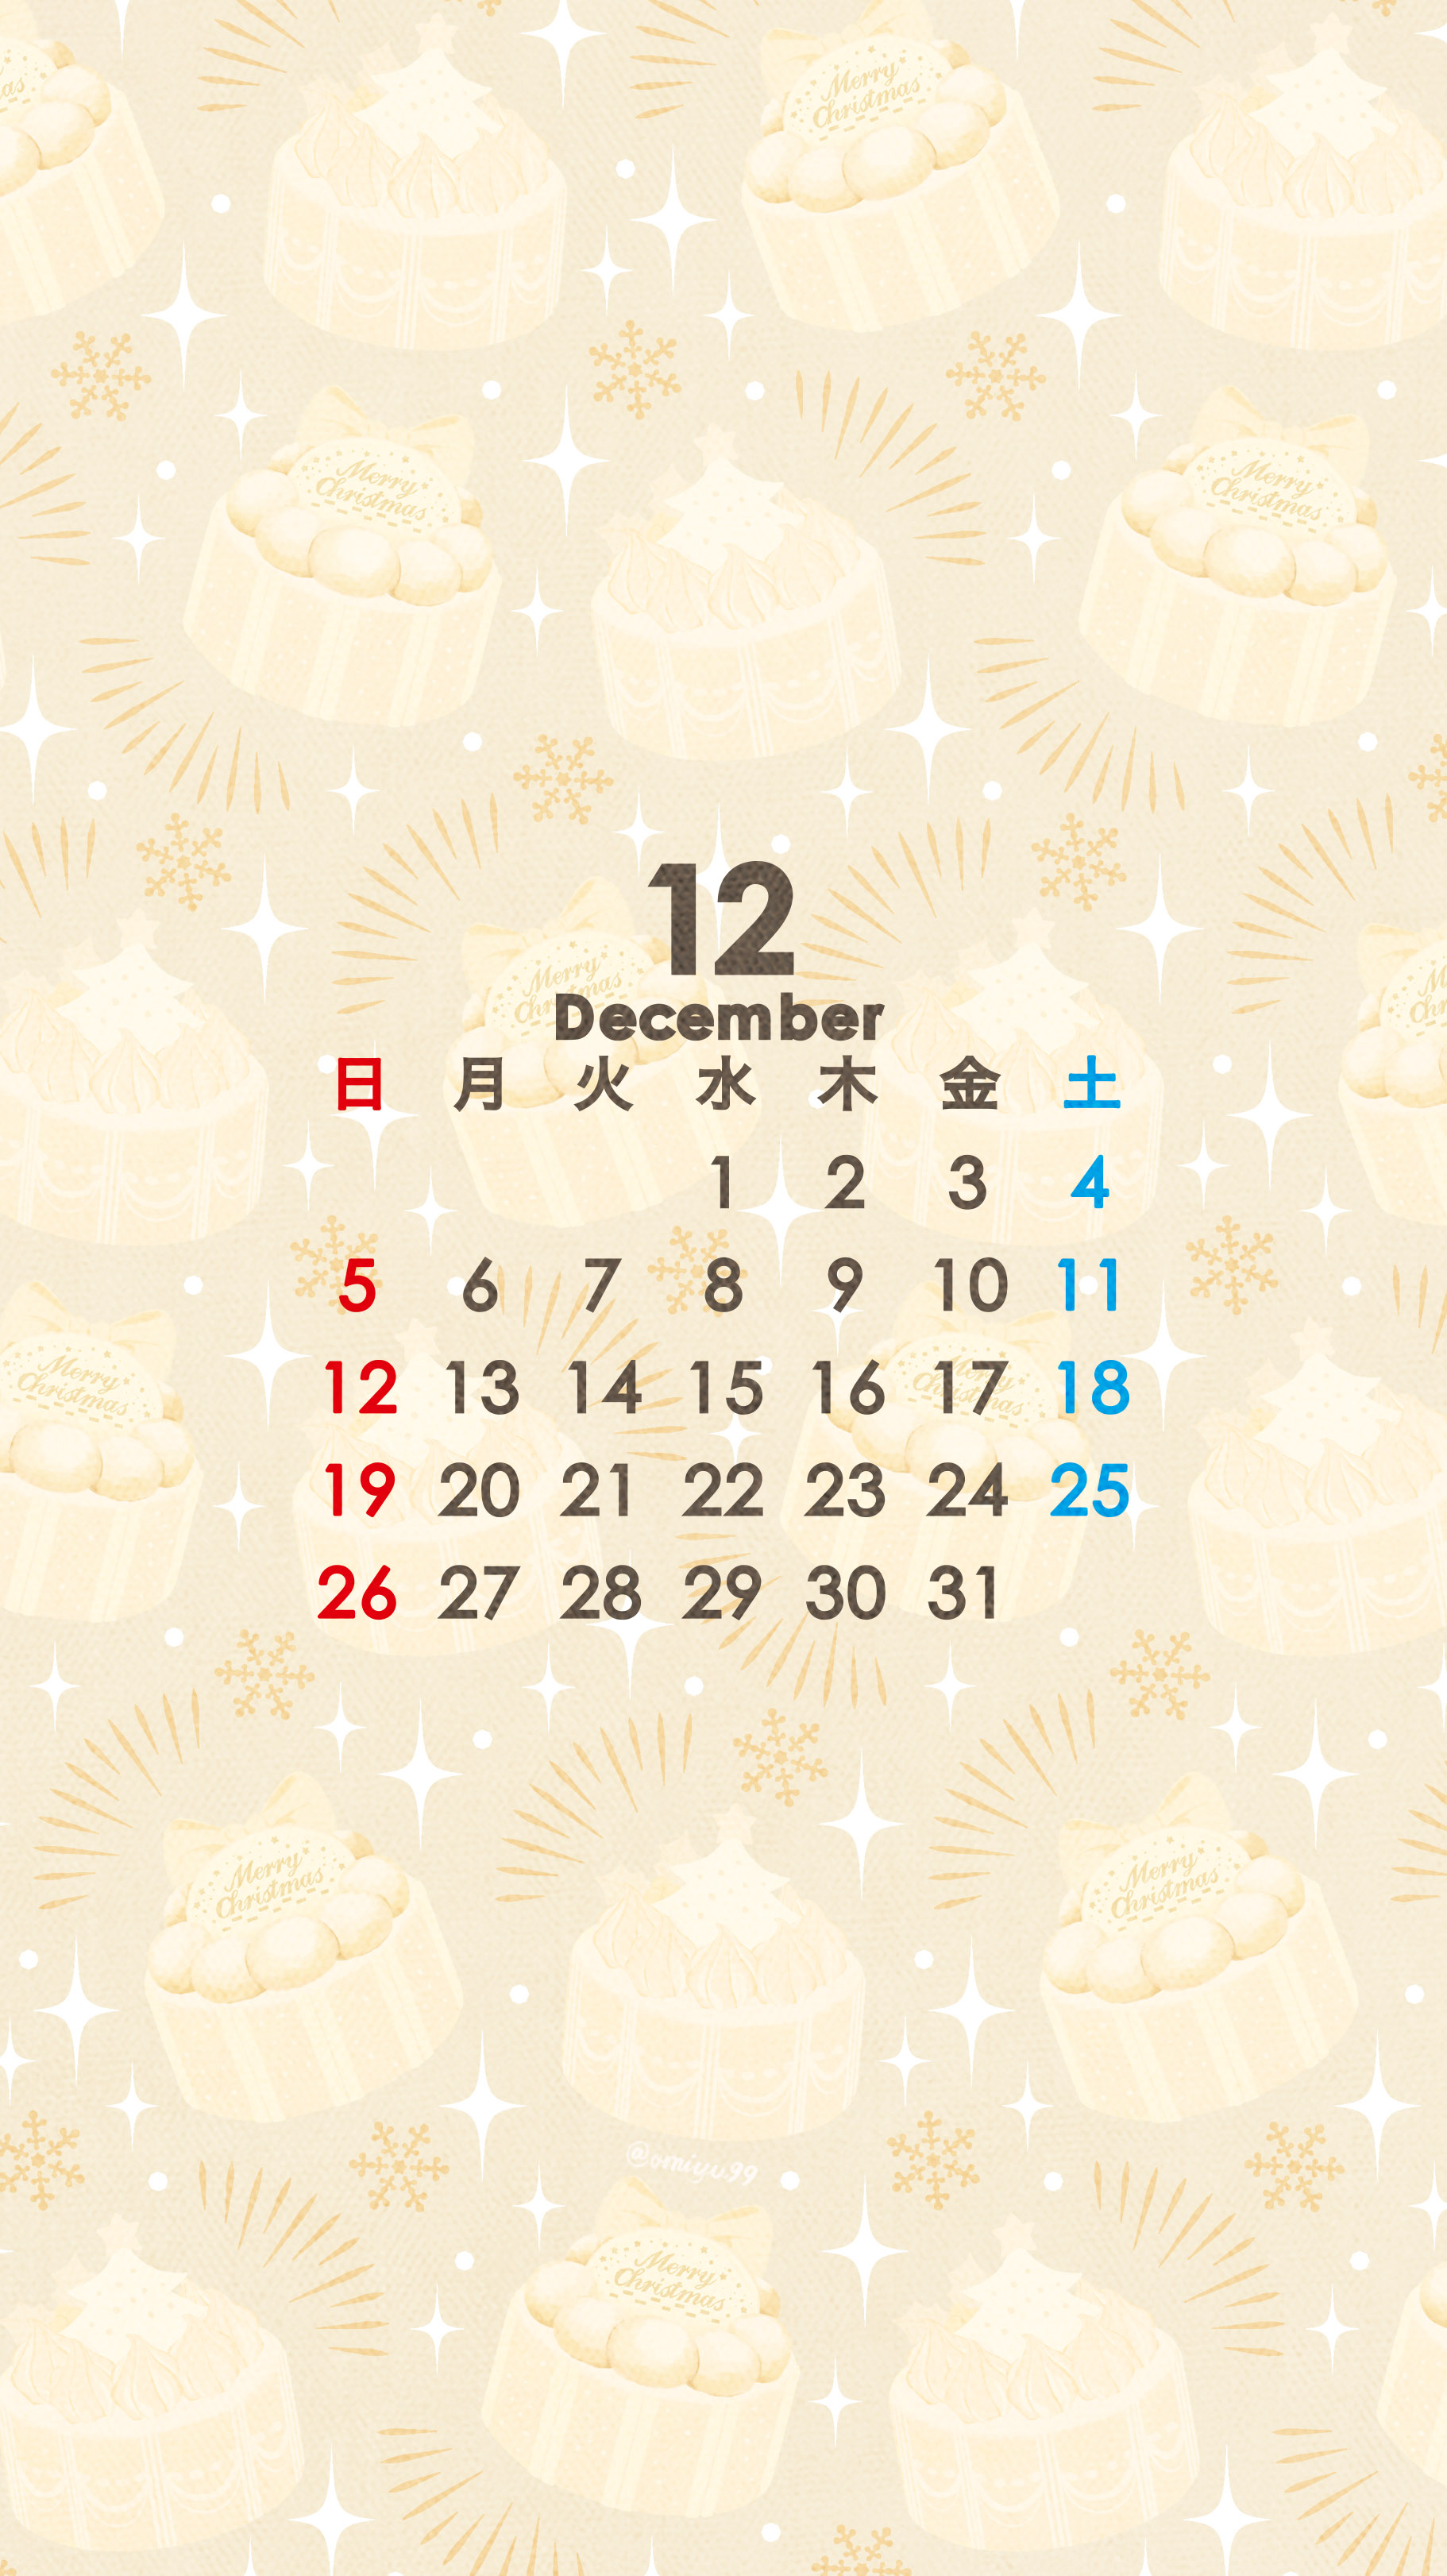 Omiyu お返事遅くなります クリスマスケーキな壁紙カレンダー 21年12月 Illust Illustration 壁紙 イラスト Iphone壁紙 クリスマス Christmas ケーキ Cake 食べ物 カレンダー T Co N5bcs1uthd Twitter